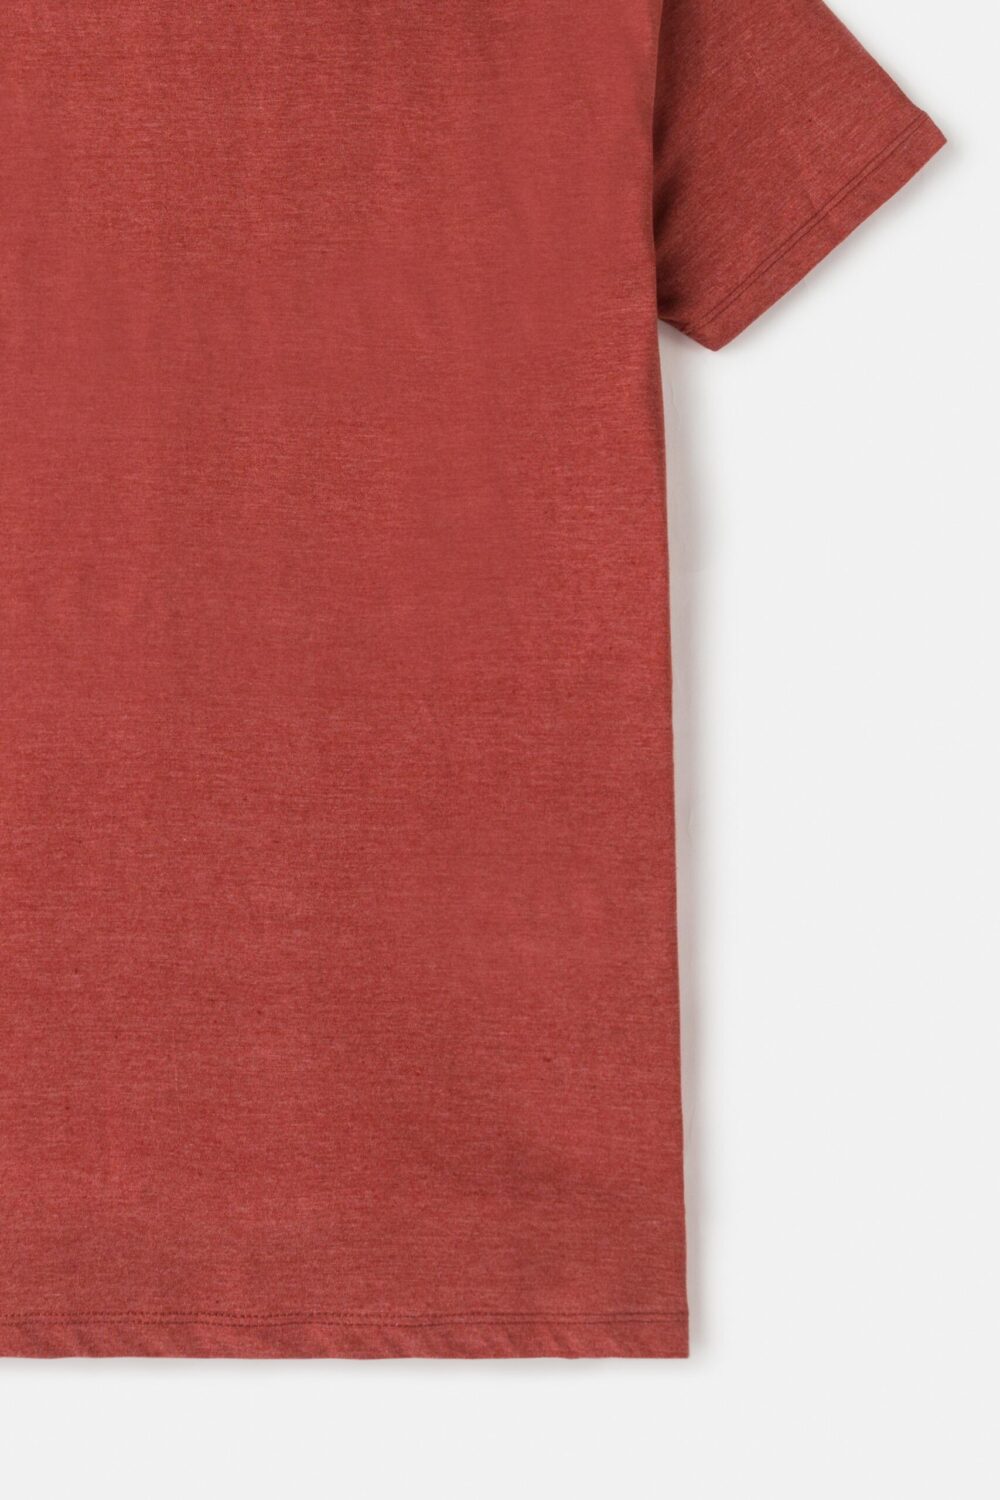 ZR Basic Cotton T Shirt – Peach